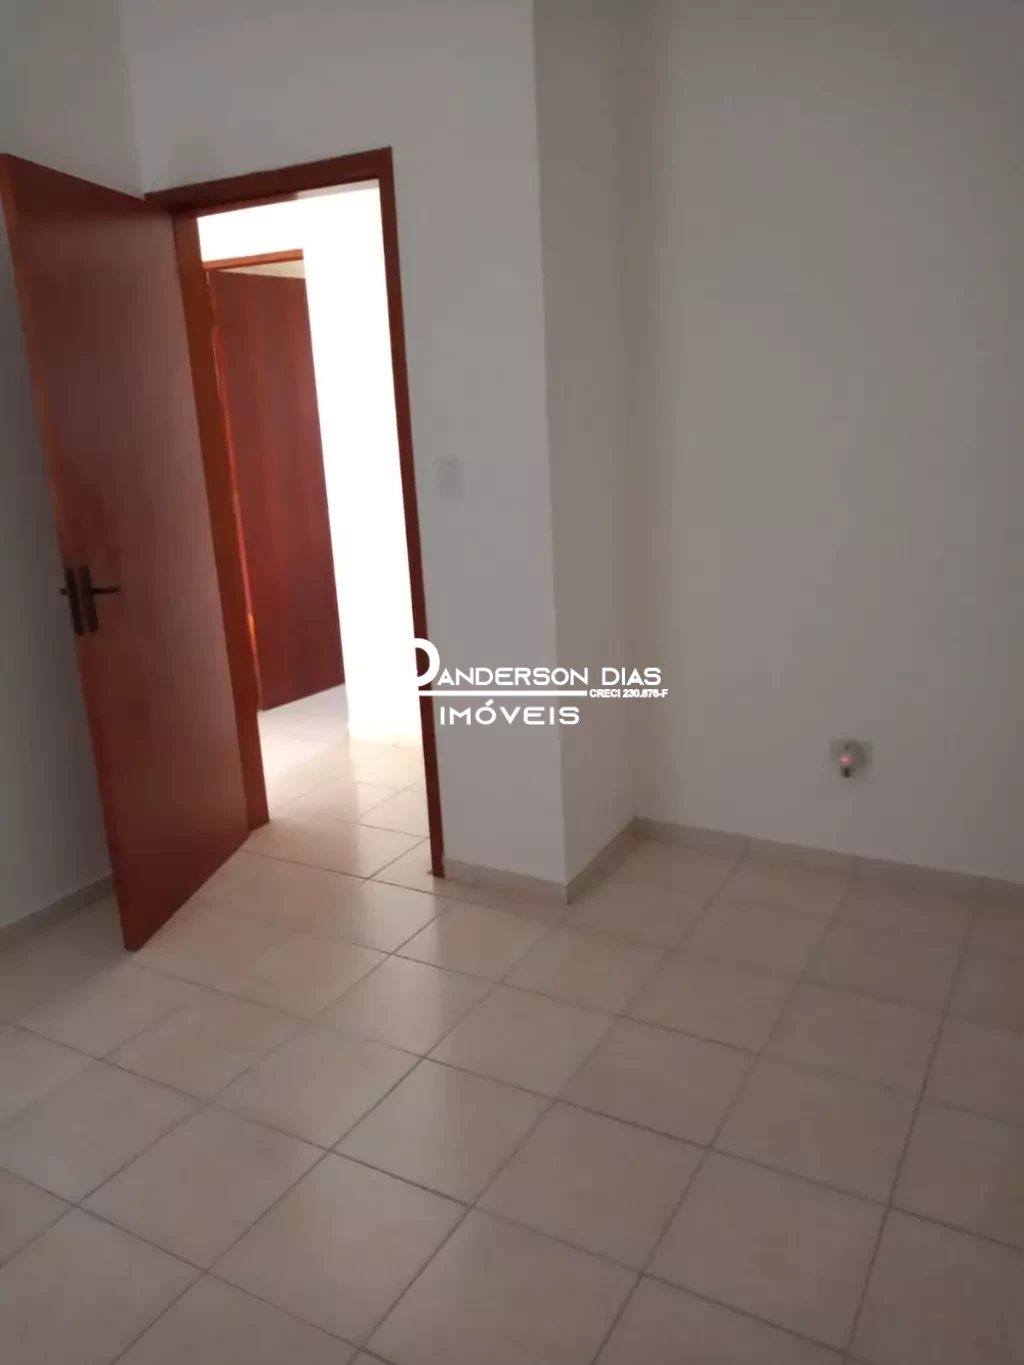 Apartamento com 2 dormitórios à venda, 63 m² por R$ 250.000 - Praia das Palmeiras - Caraguatatuba/SP